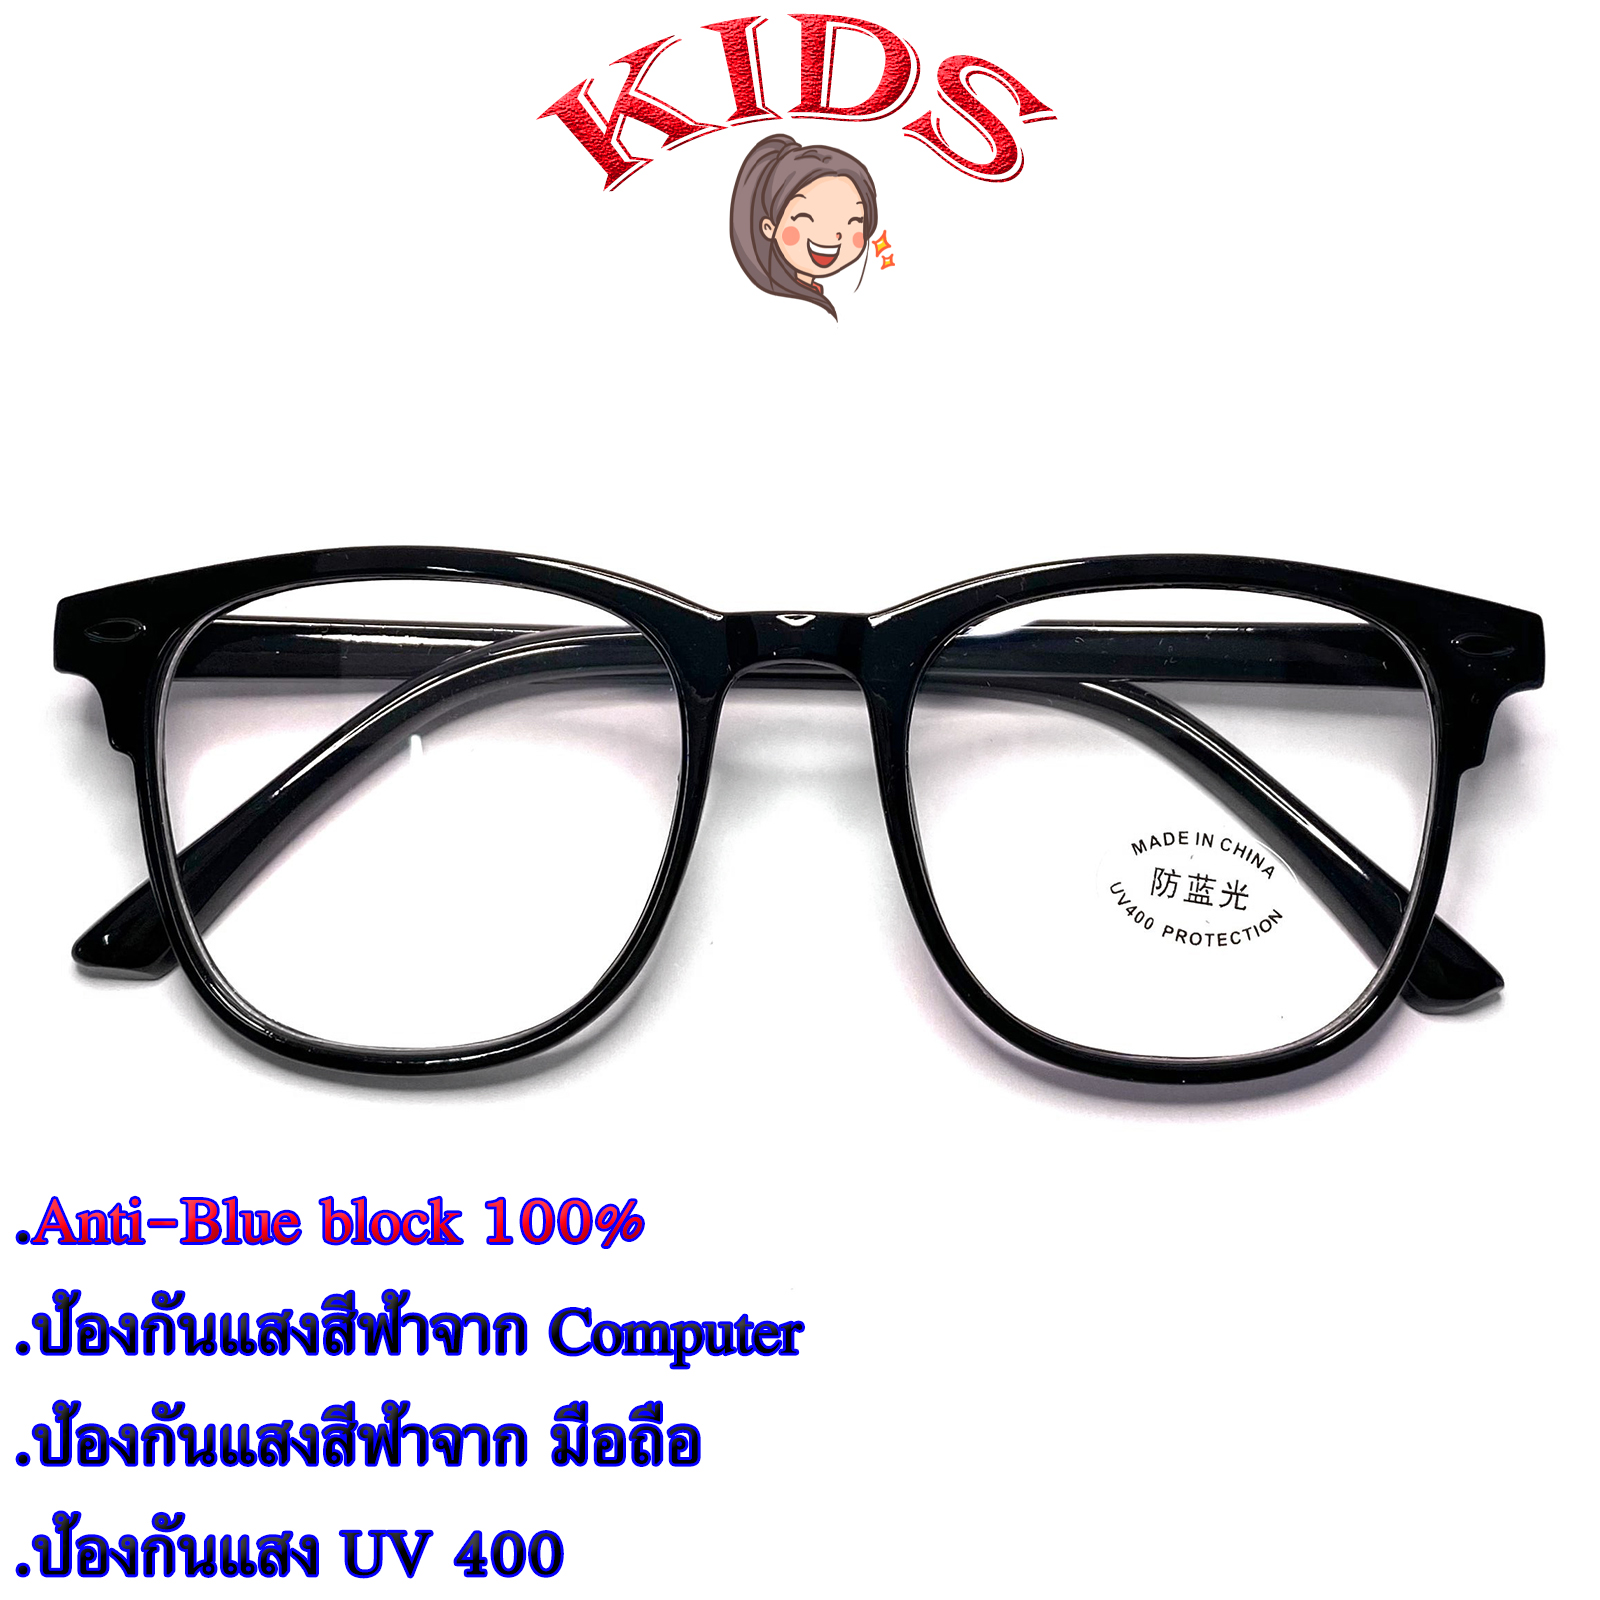 Blue Block แว่นตาเด็ก กรองแสงสีฟ้า กรองแสงคอม รุ่น 1111 สีดำ พลาสติก พีซี เกรด เอ ขาข้อต่อ กรองแสงสูงสุด95% กัน UV 100% Glasses